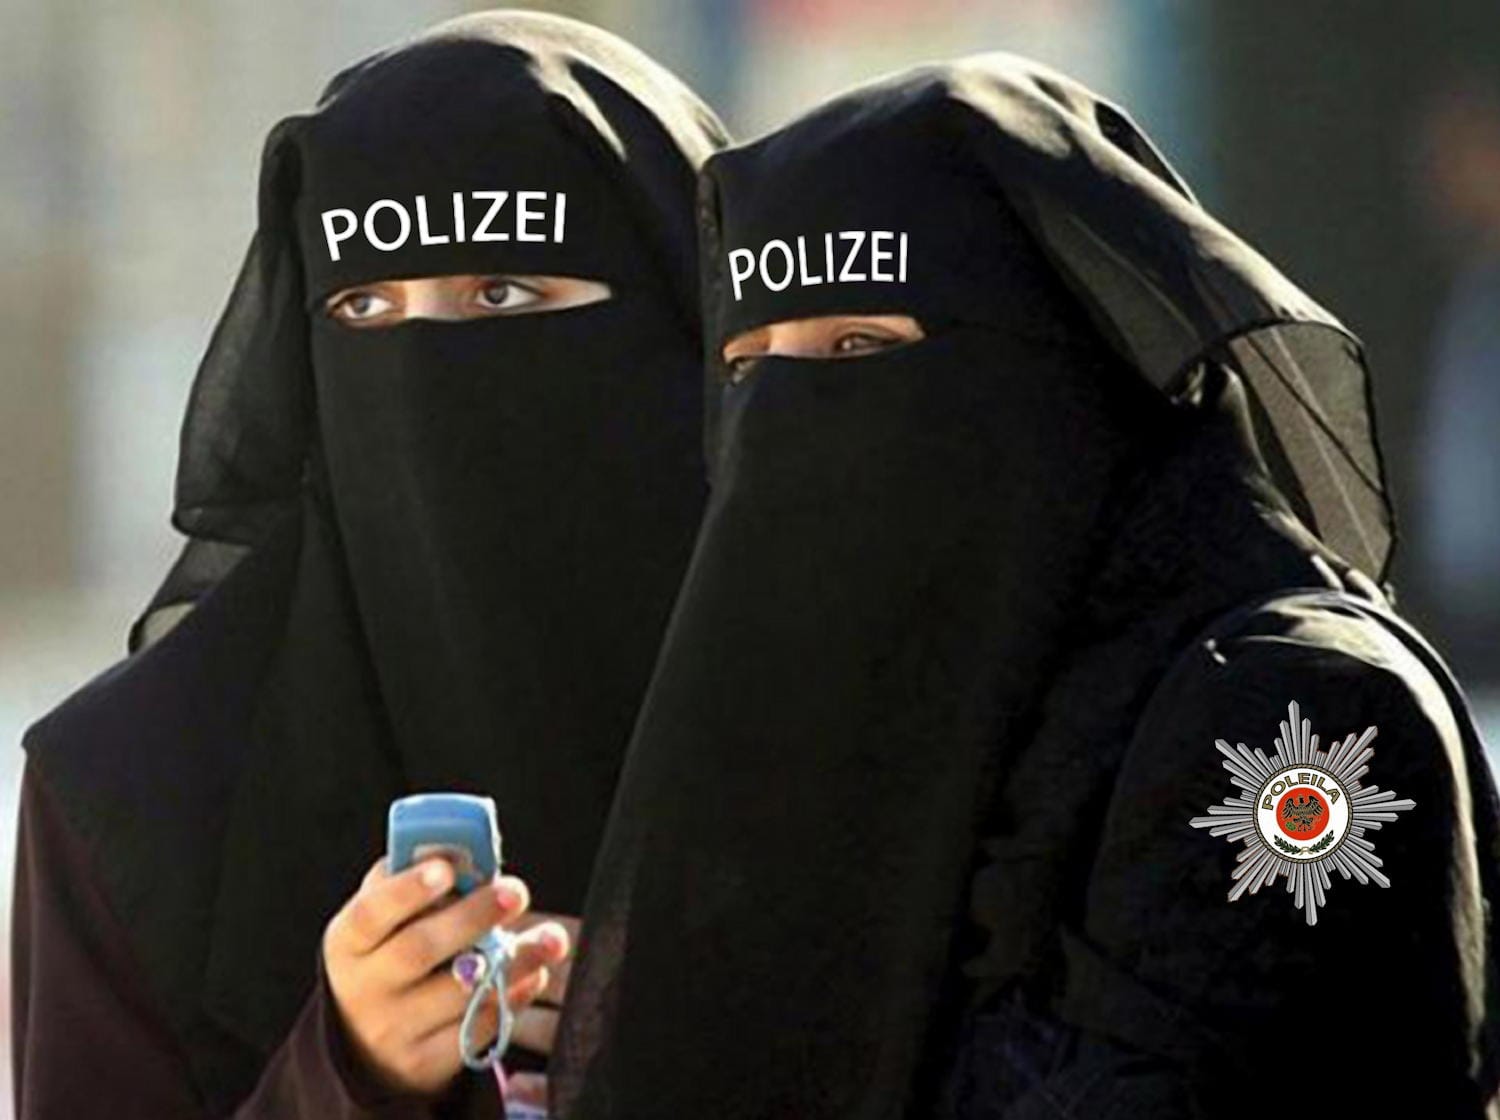 Polizistinnen mit Burka niqaab uniform police polizei Berlin vermummung schleier islam muslima dienstkleidung halal konform